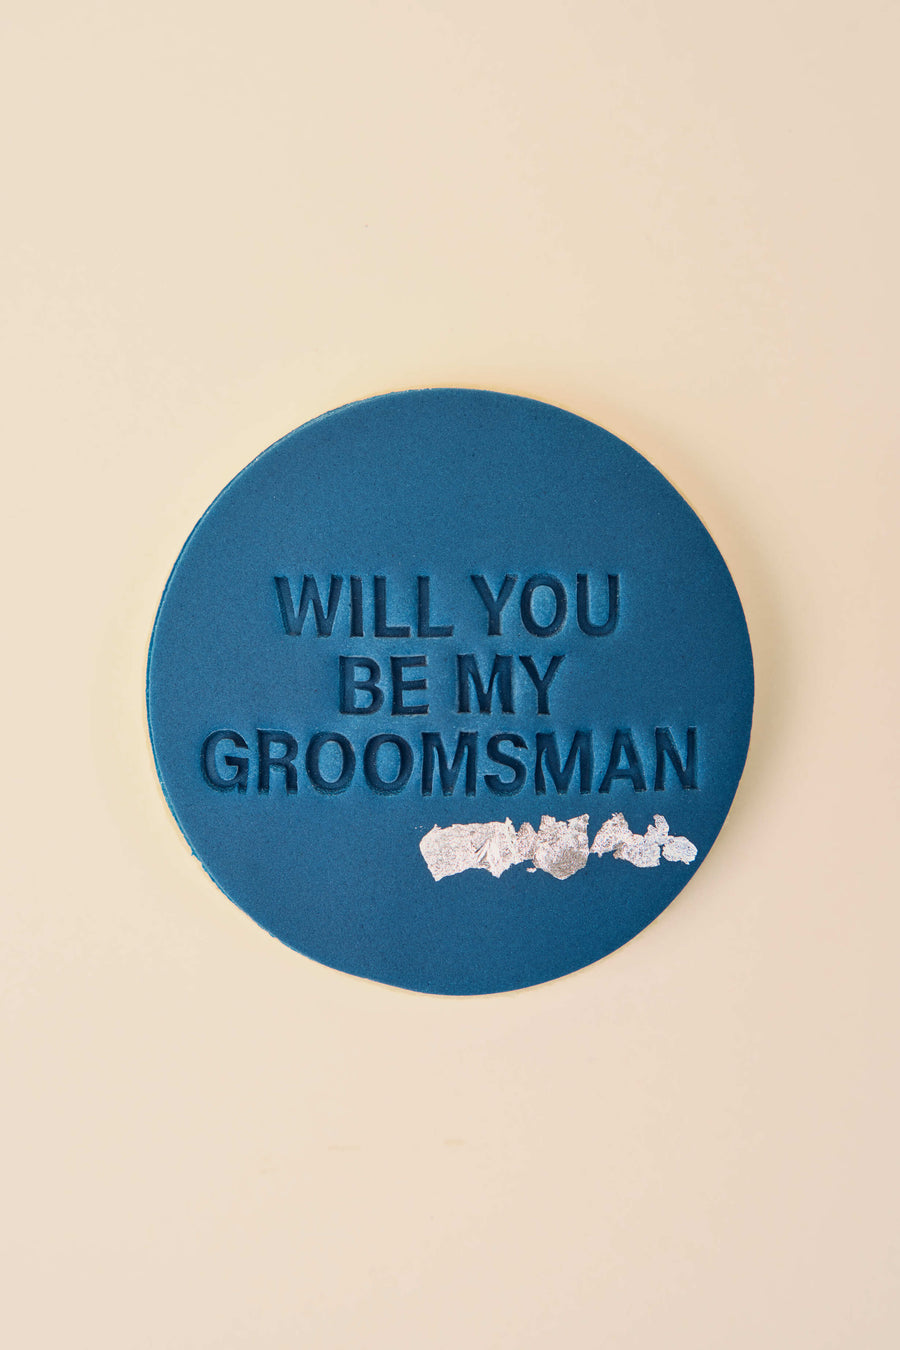 Will you be my groomsman?